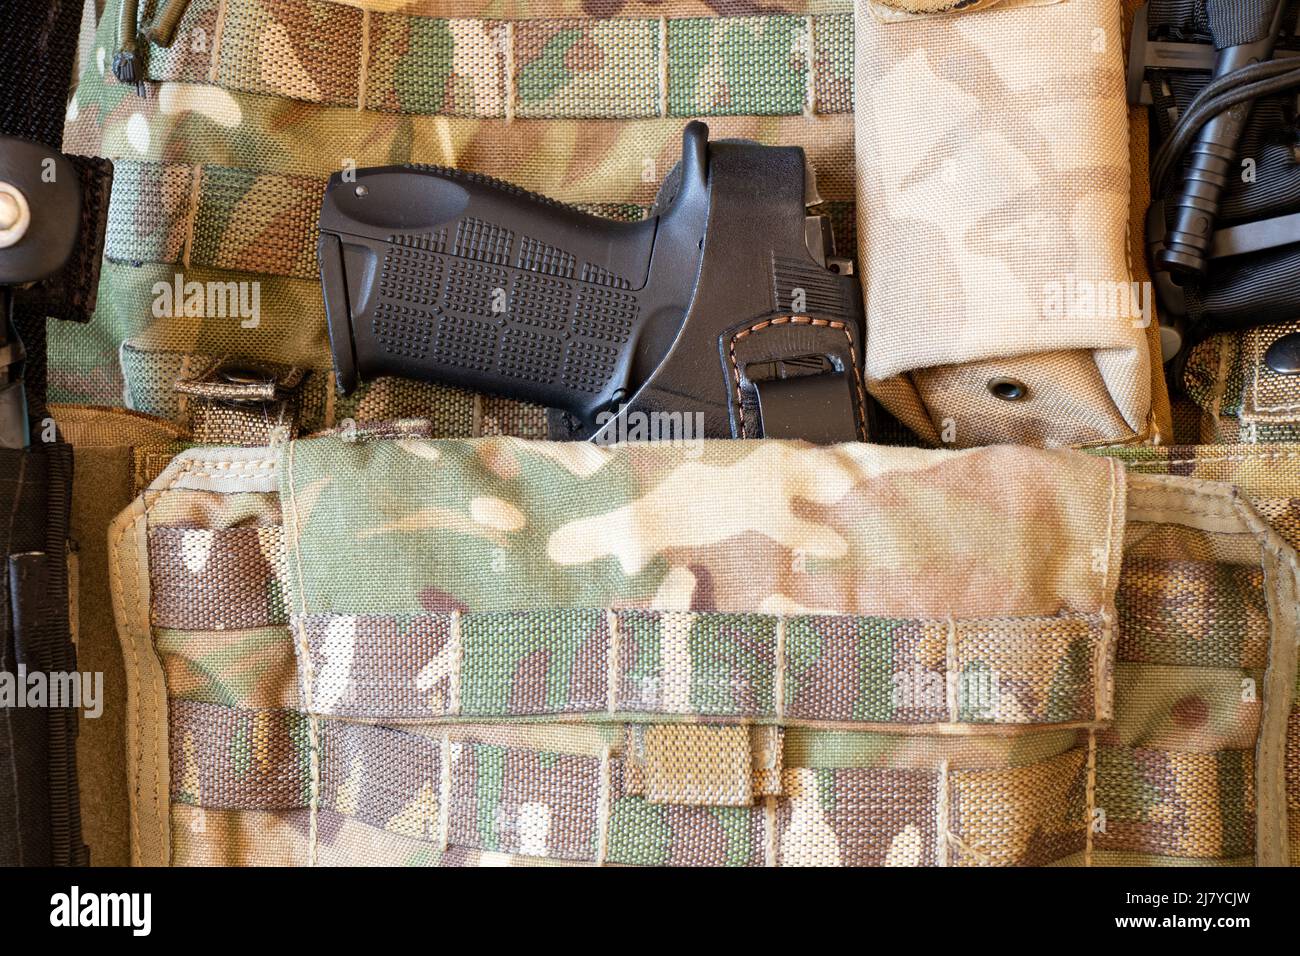 Chaleco militar reforzado a prueba de balas y pistola, arma, uniforme de un soldado ucraniano en la guerra, ejército de Ucrania 2022 Foto de stock